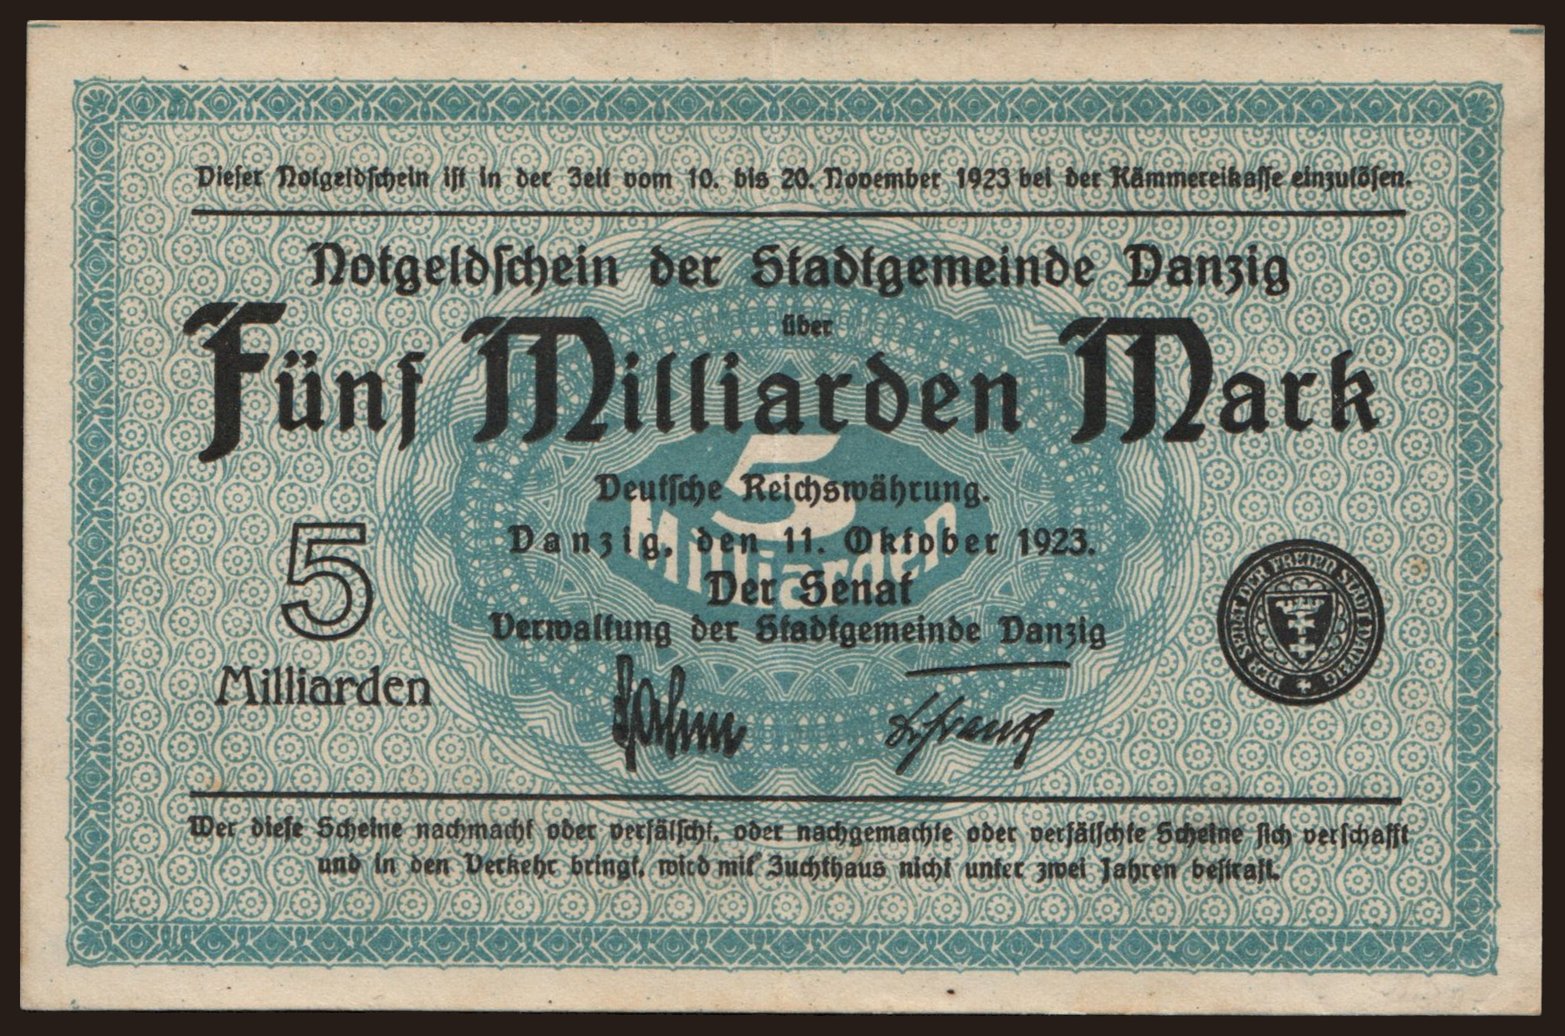 5.000.000.000 Mark, 1923